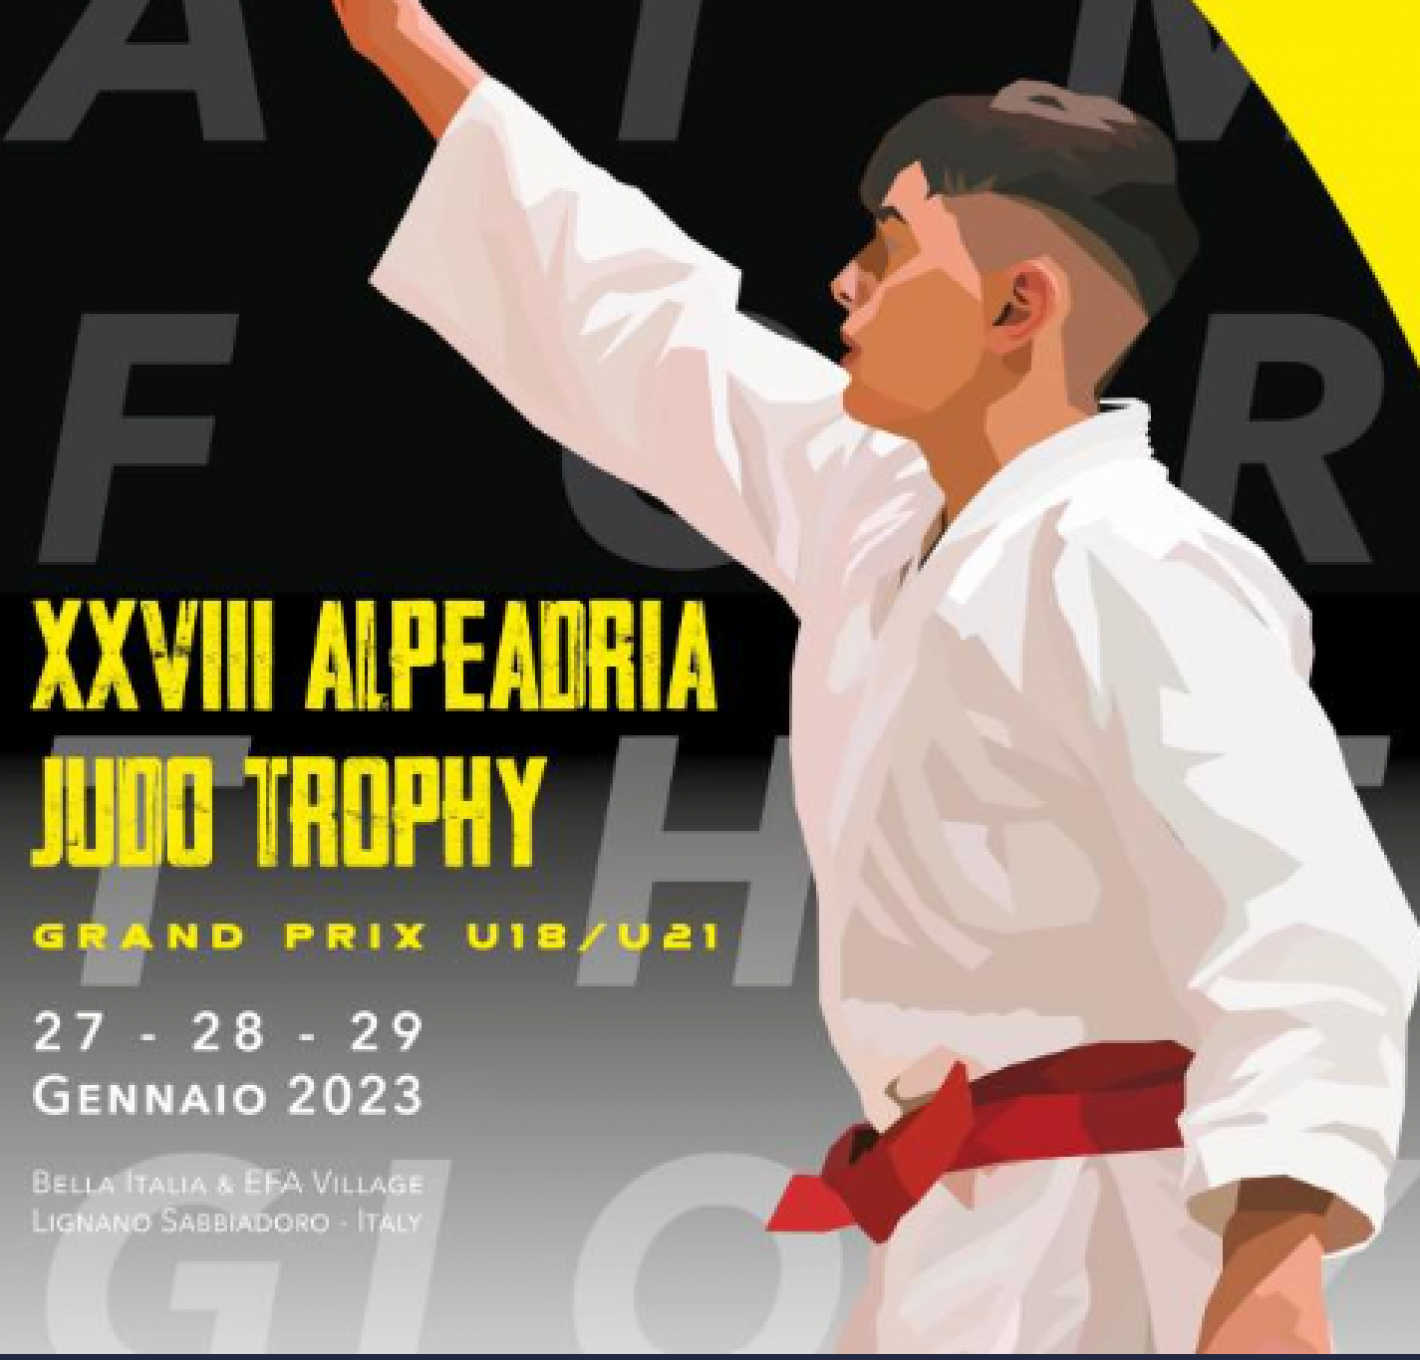 images/sardegna/Settore_Judo/2023/20230128_Trofeo_Adria/medium/Immagine.png